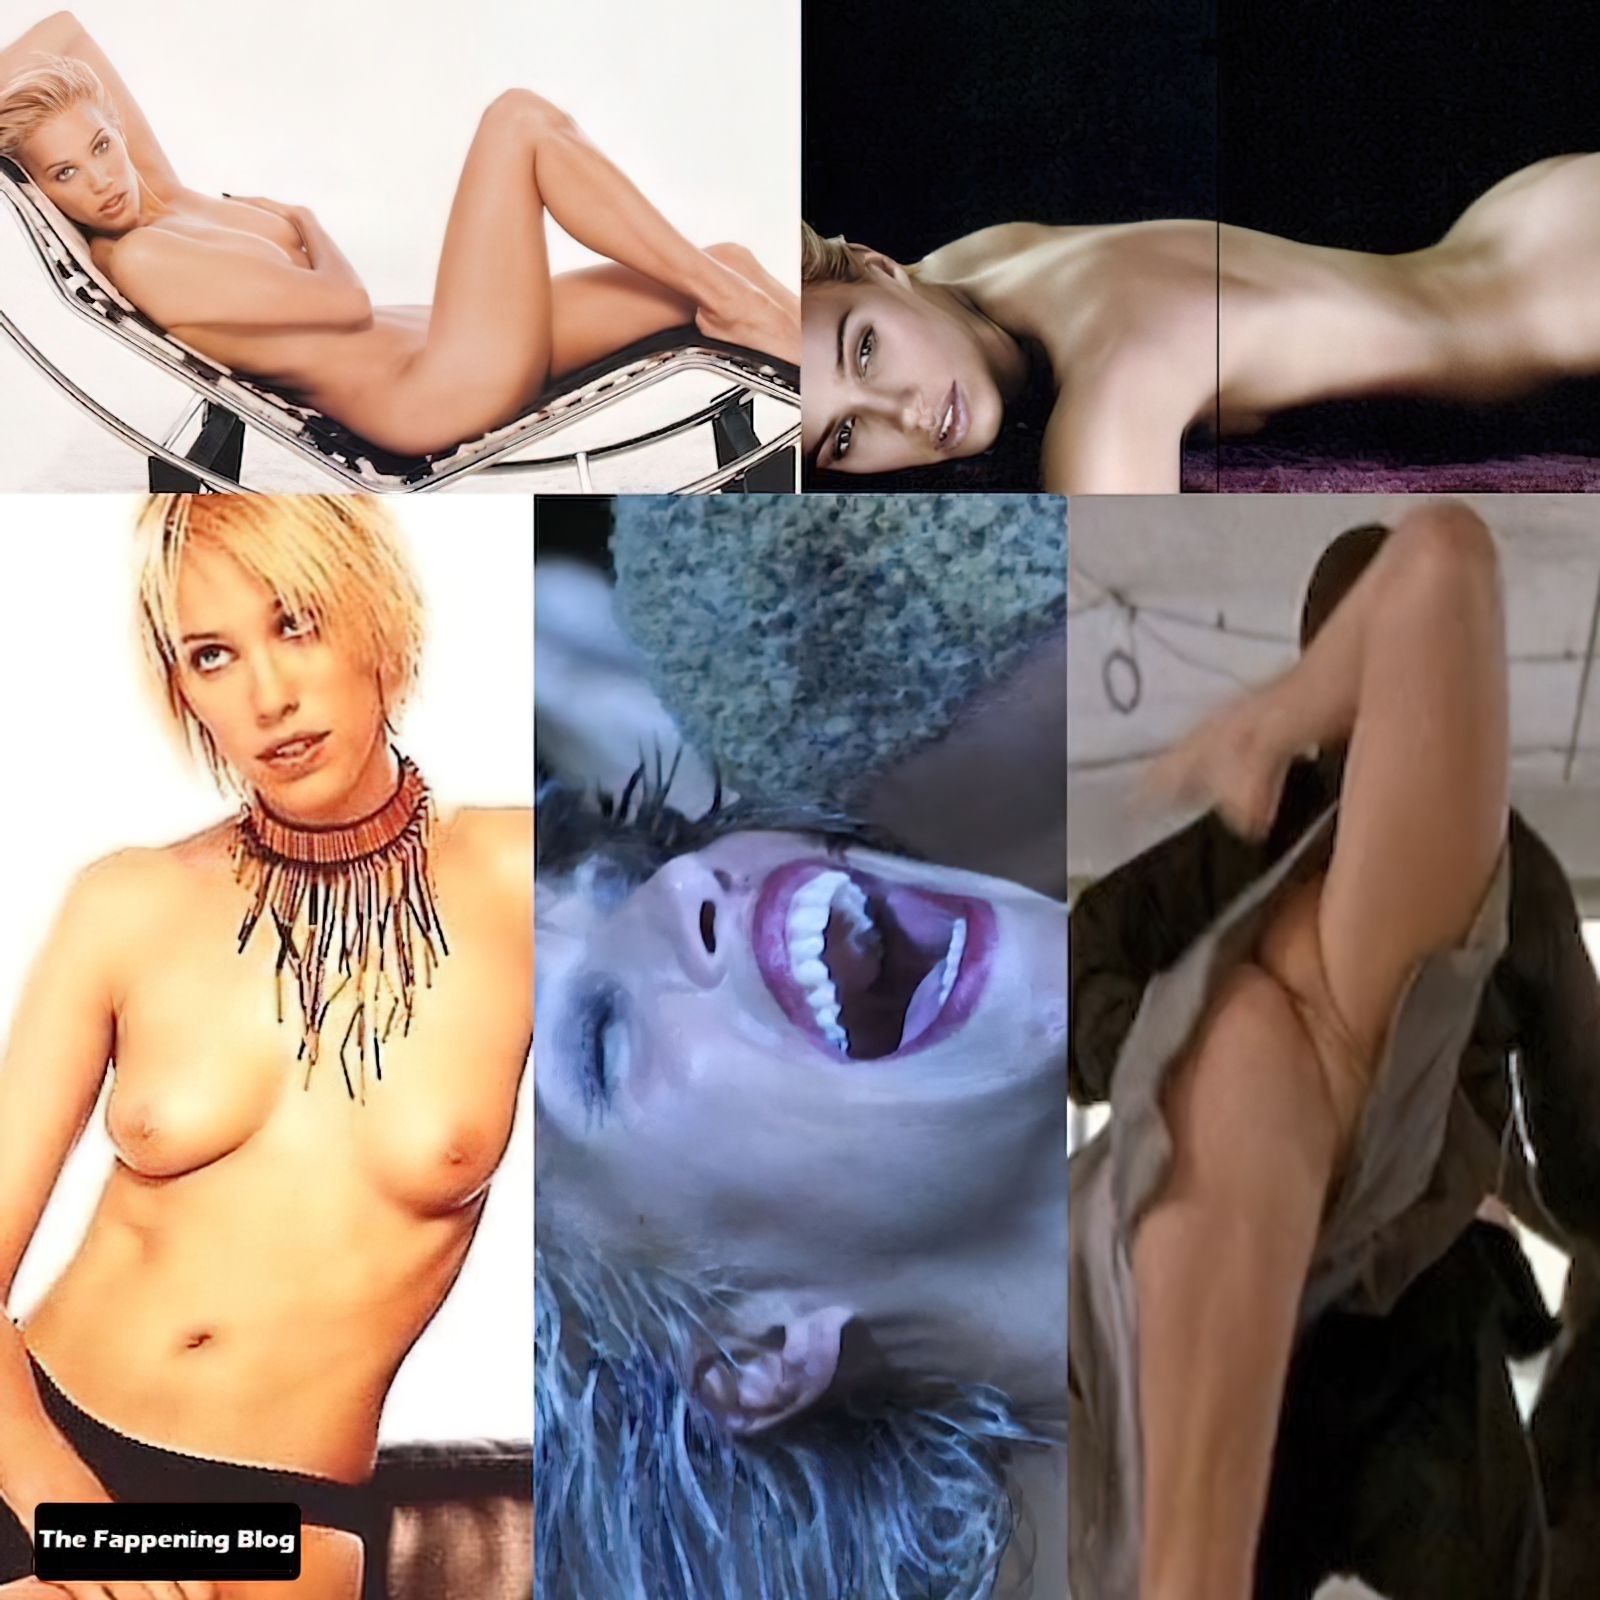 Эмма сьоберг фото голая порно видео на pornocom